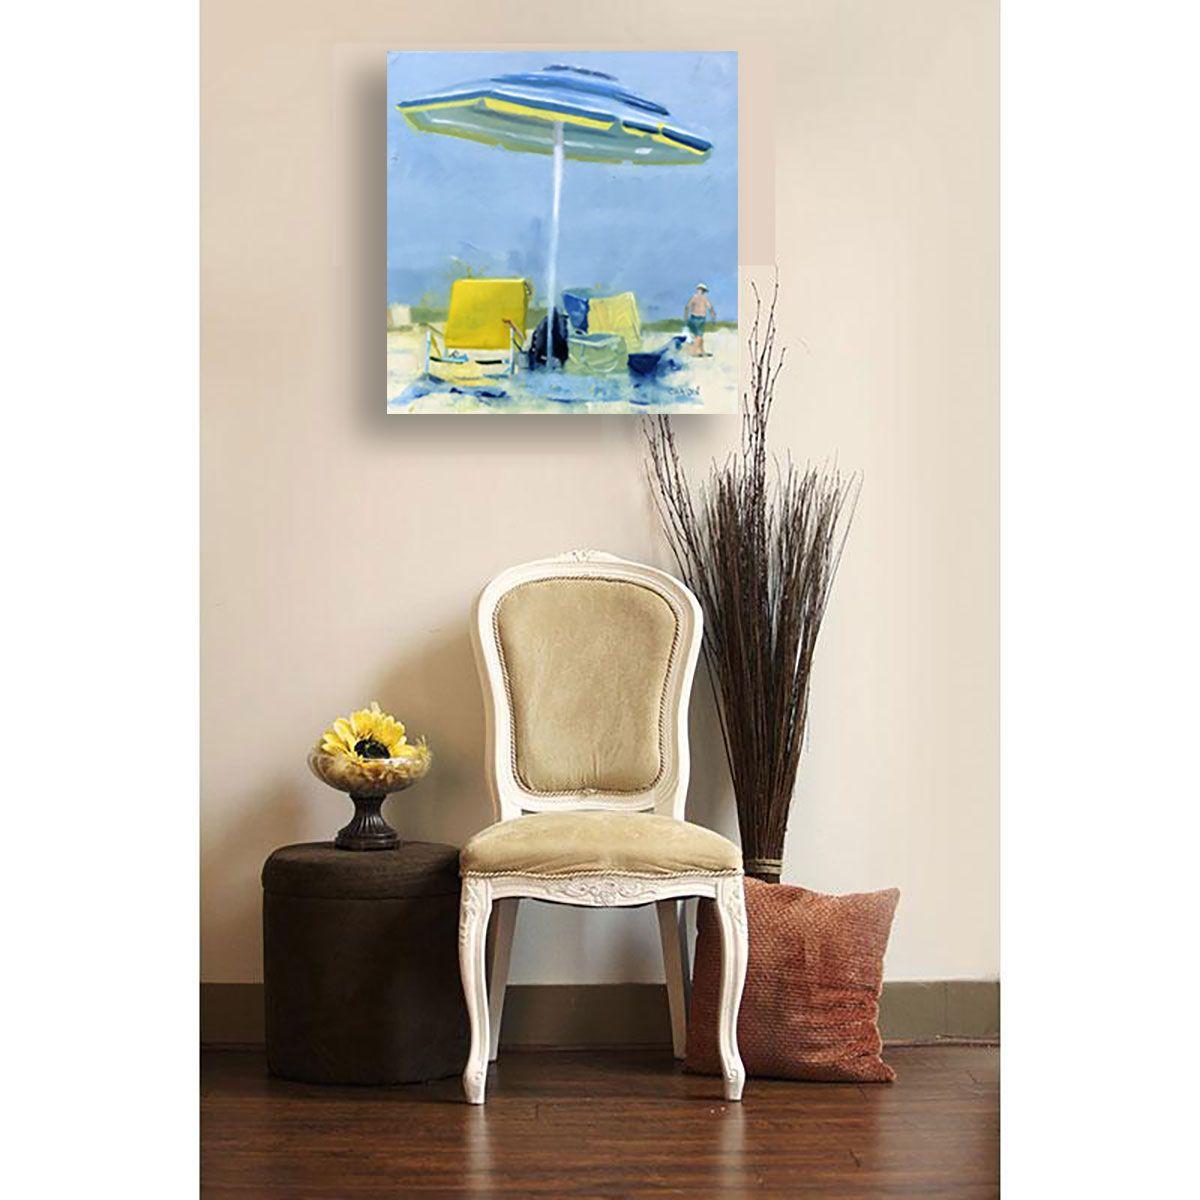 Umbrella by the Ocean, Peinture, Huile sur Panneau de Bois - Contemporain Painting par Dennis Crayon